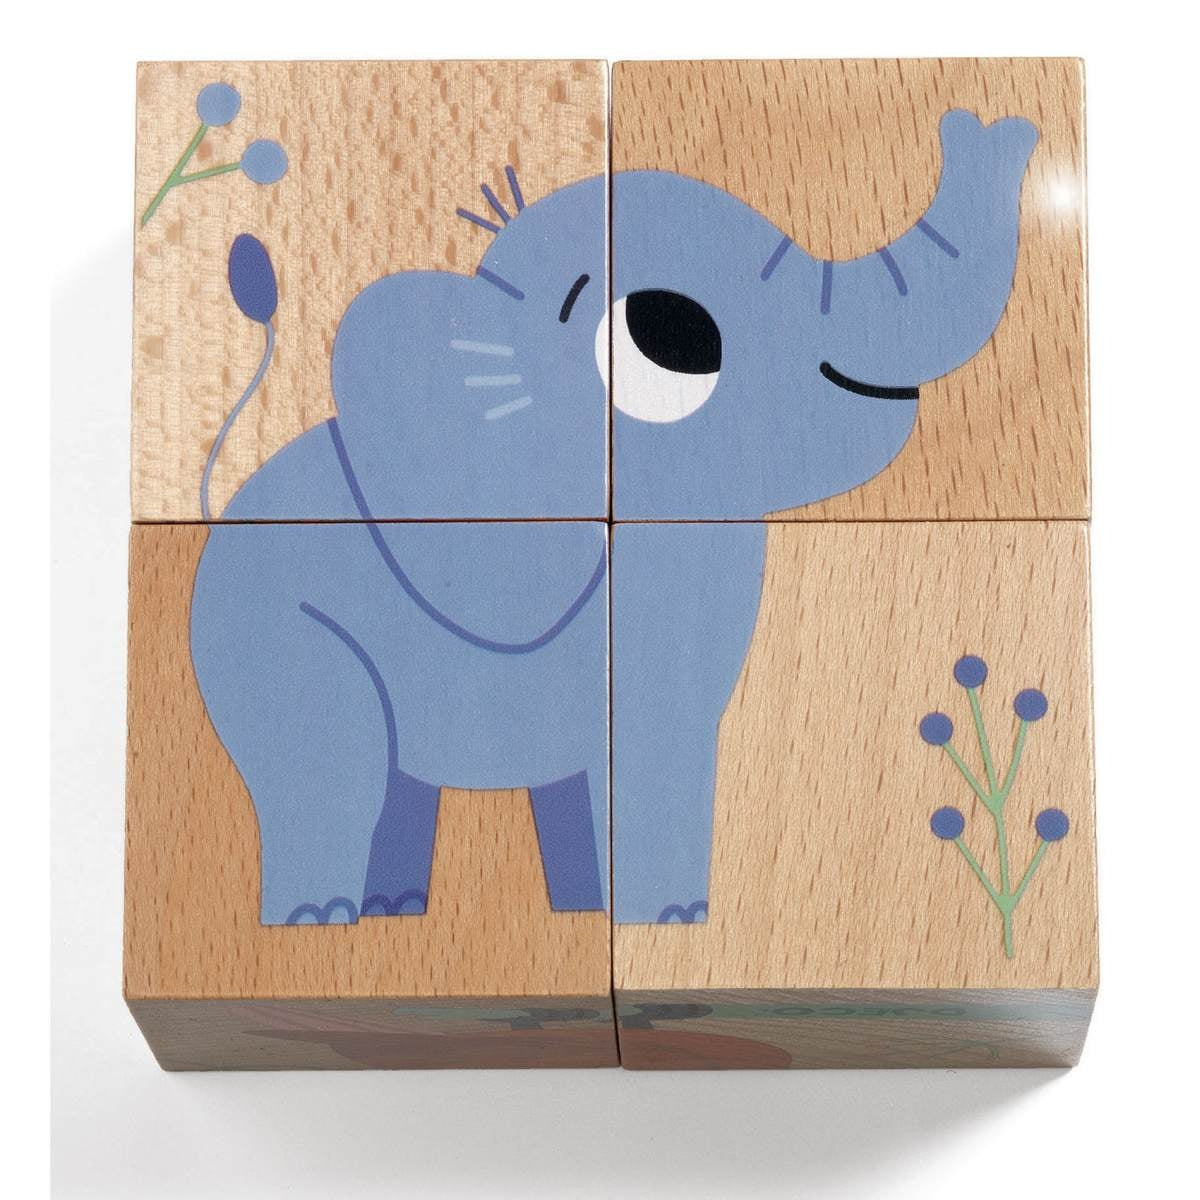 Das DJECO Würfelpuzzle Wild & Co besticht mit den 4 gut greifbaren Puzzleteilen (9 x 9 x 4,5cm) und den süßen Illustrationen. Das Holz ist gut sichtbar und unterstreicht den Naturcharacter des Spielzeugs.